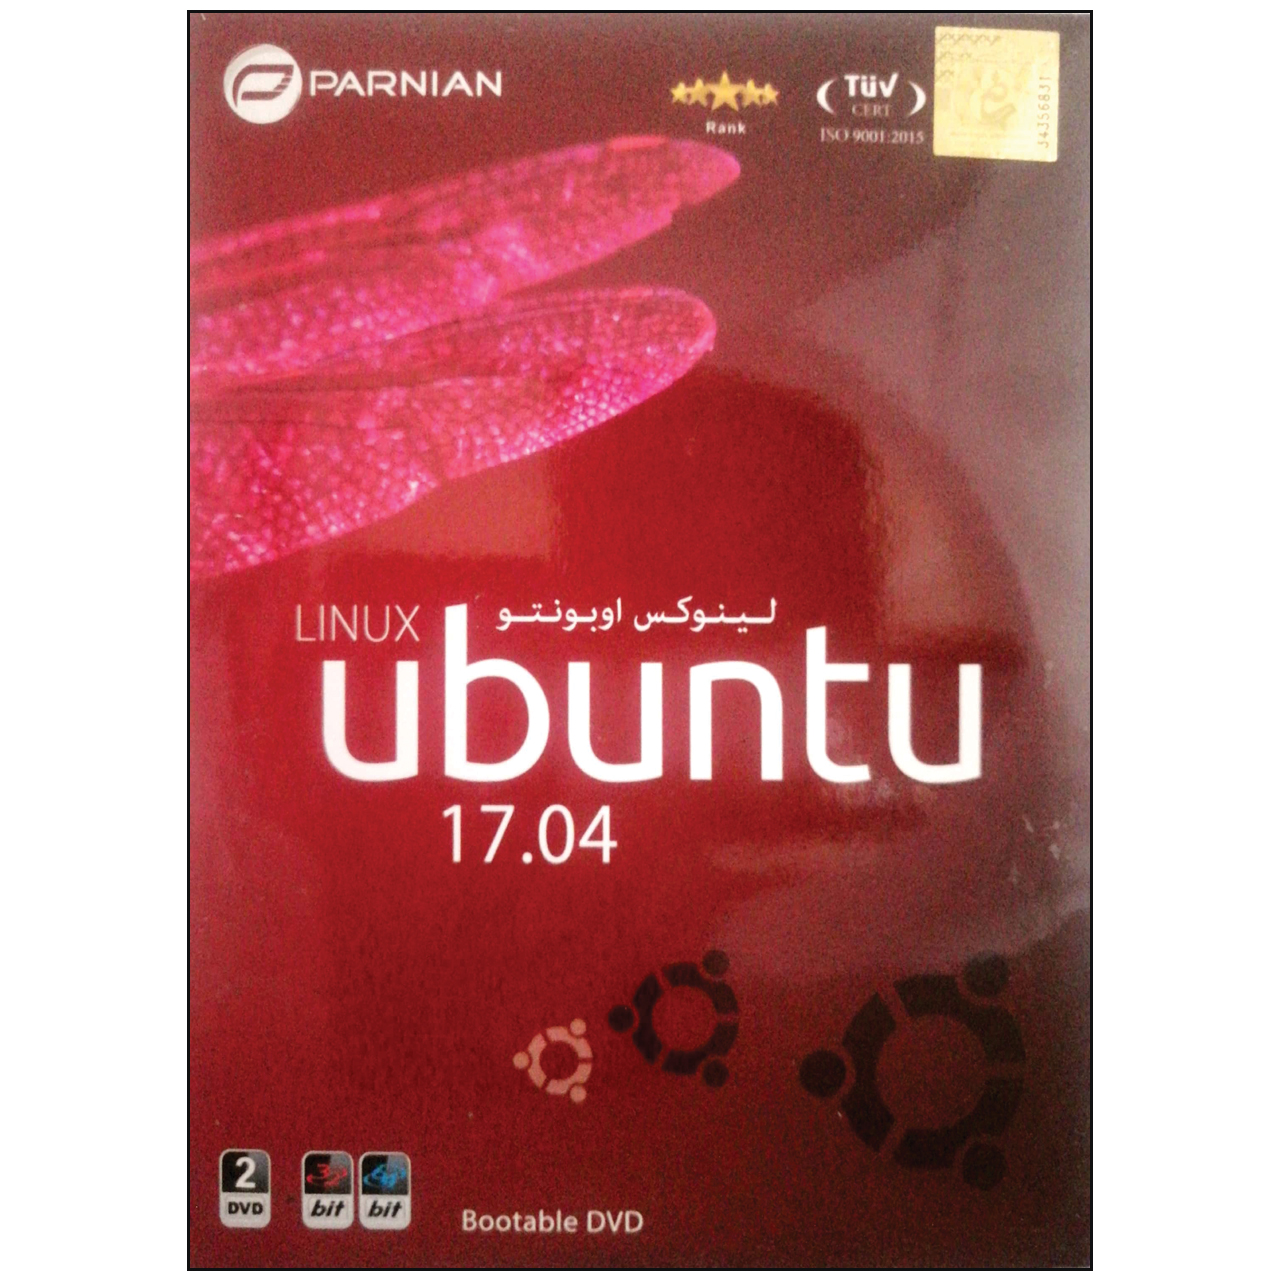 نرم افزار لینوکس Ubuntu 17.04 نشر پرنیان